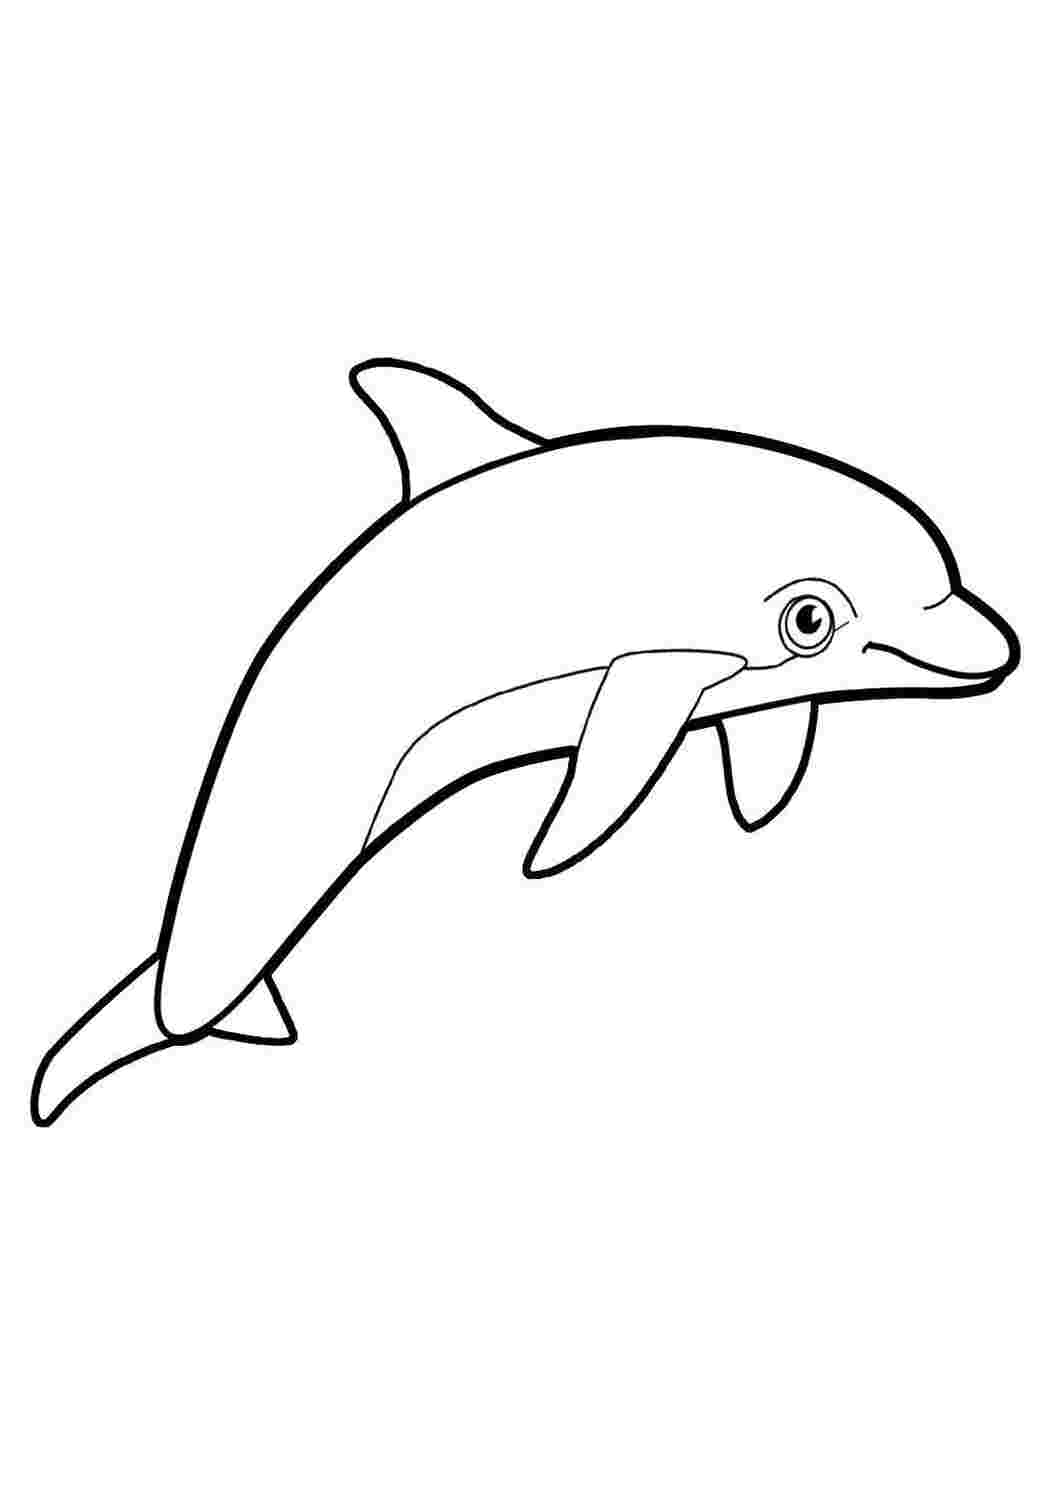 Контур дельфина для раскрашивания